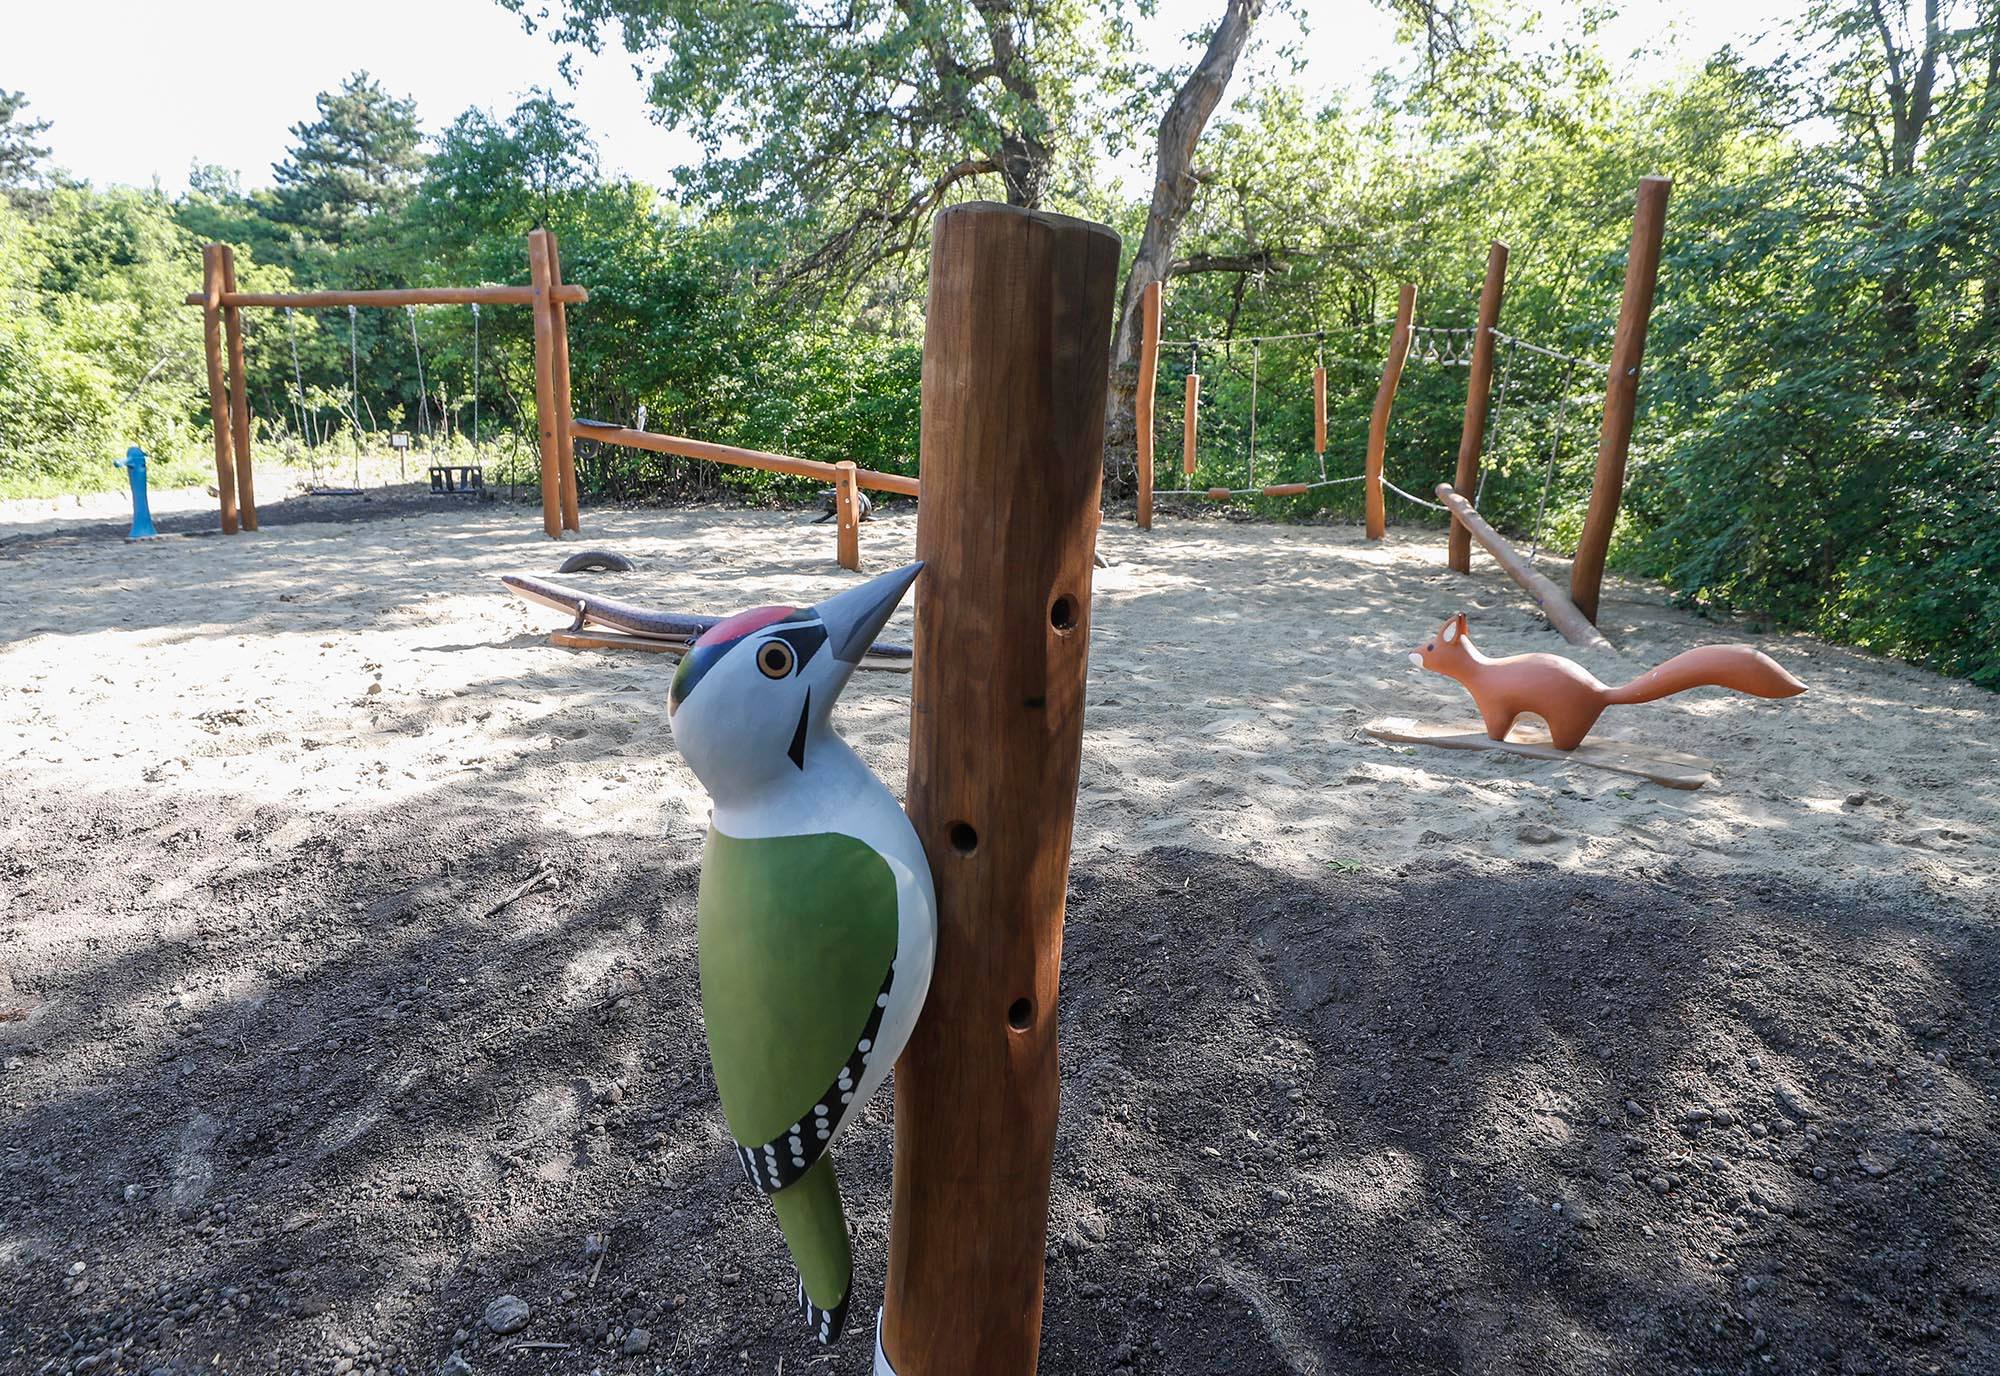 Erdei játszótér, osztályterem és madárles is várja mostantól a Szép-völgyi erdő kirándulóit